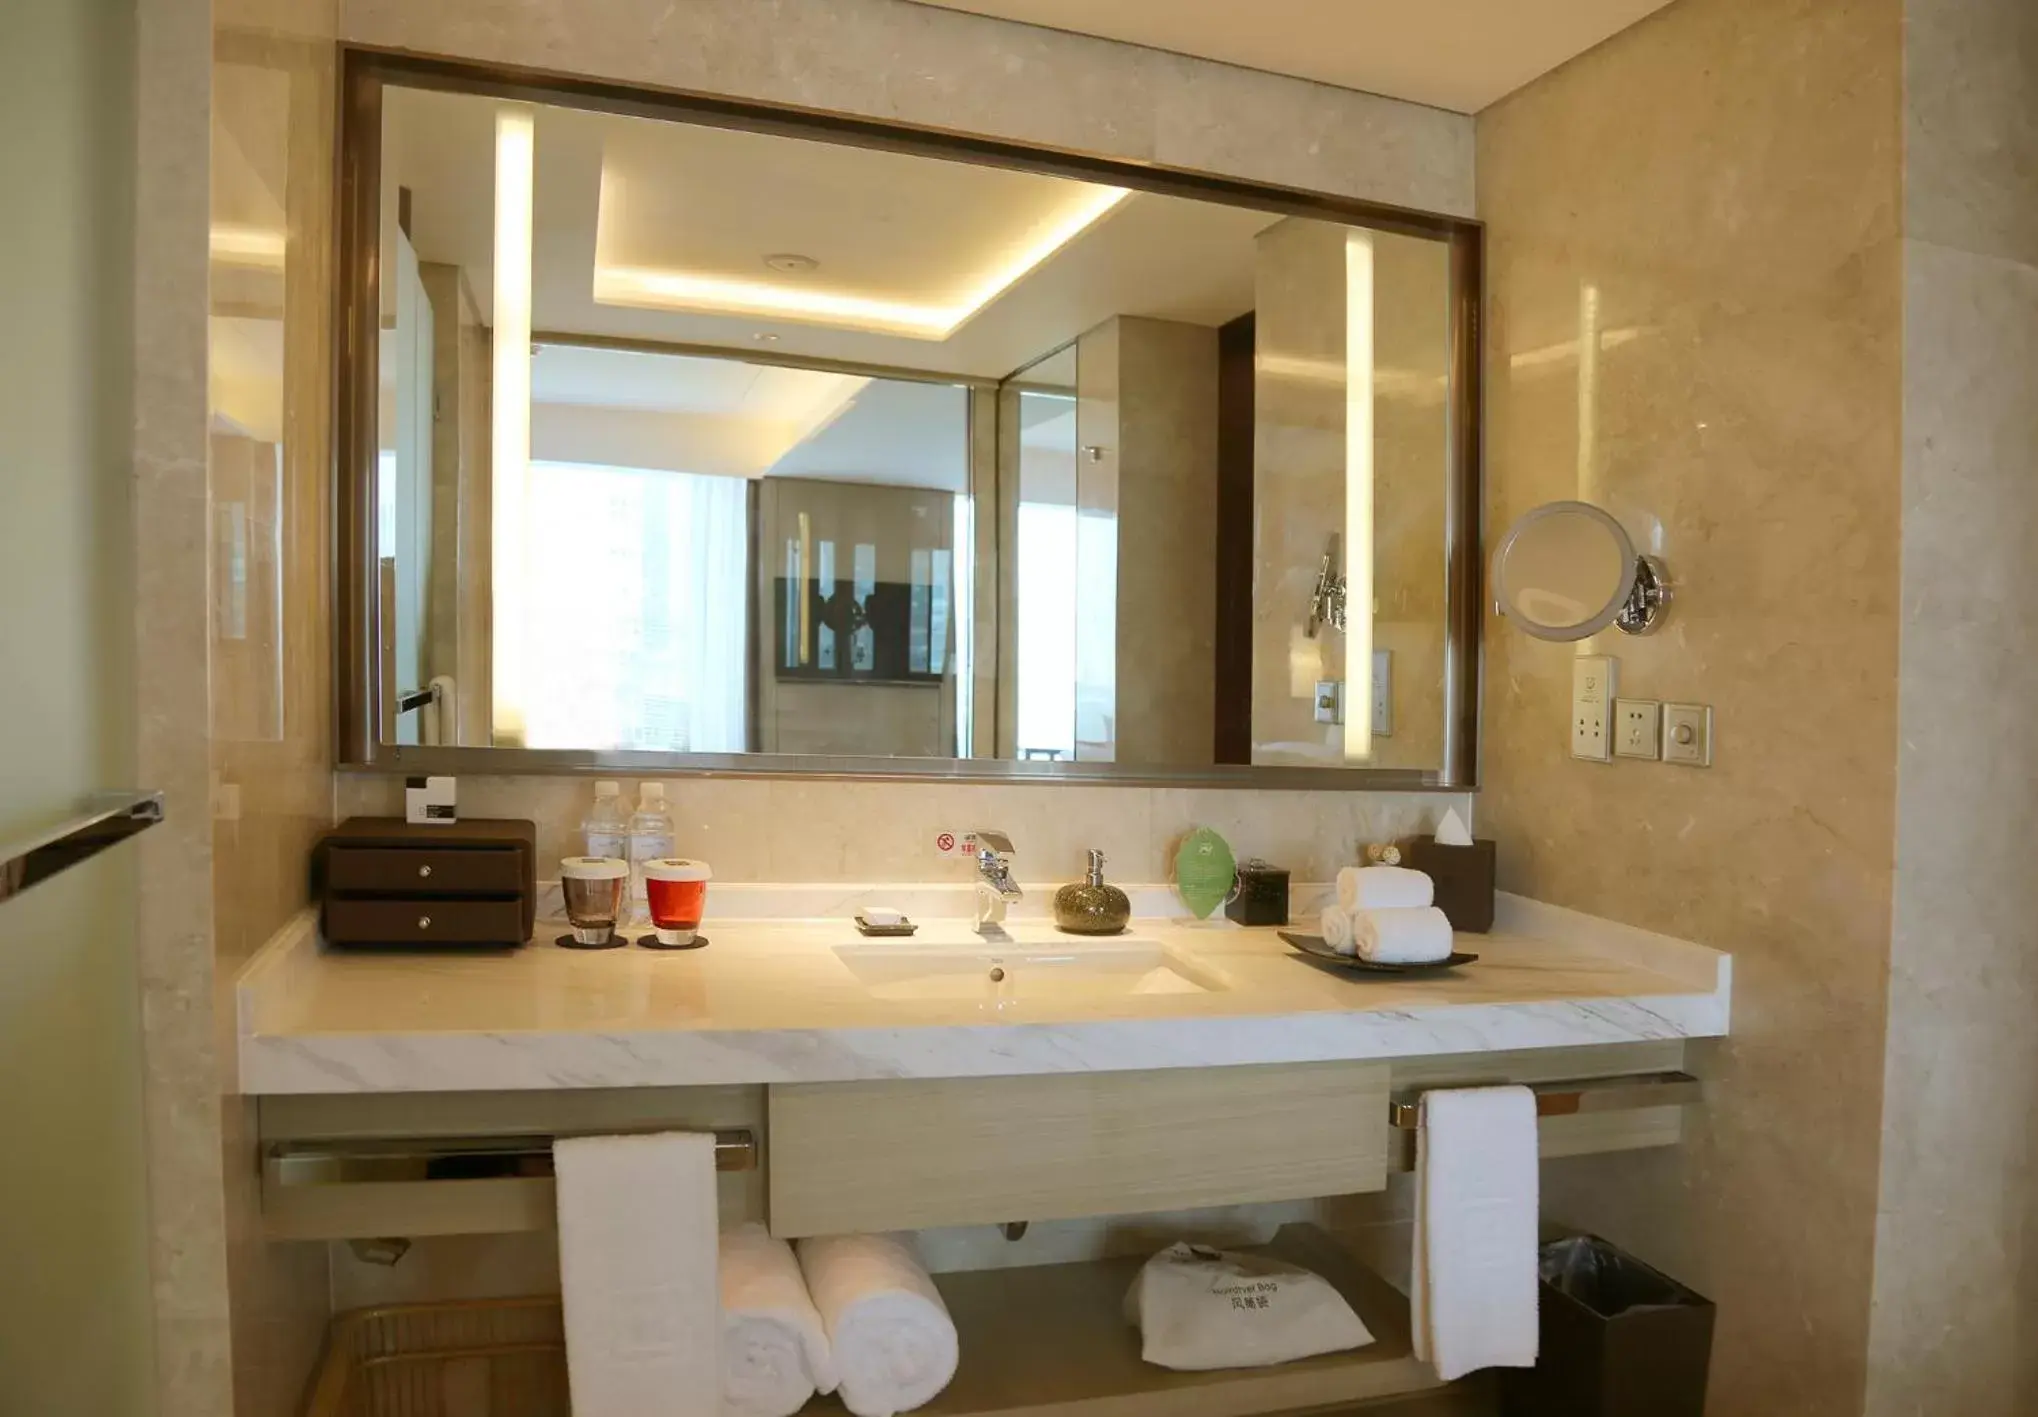 Toilet, Bathroom in Grand Metropark Hotel Beijing